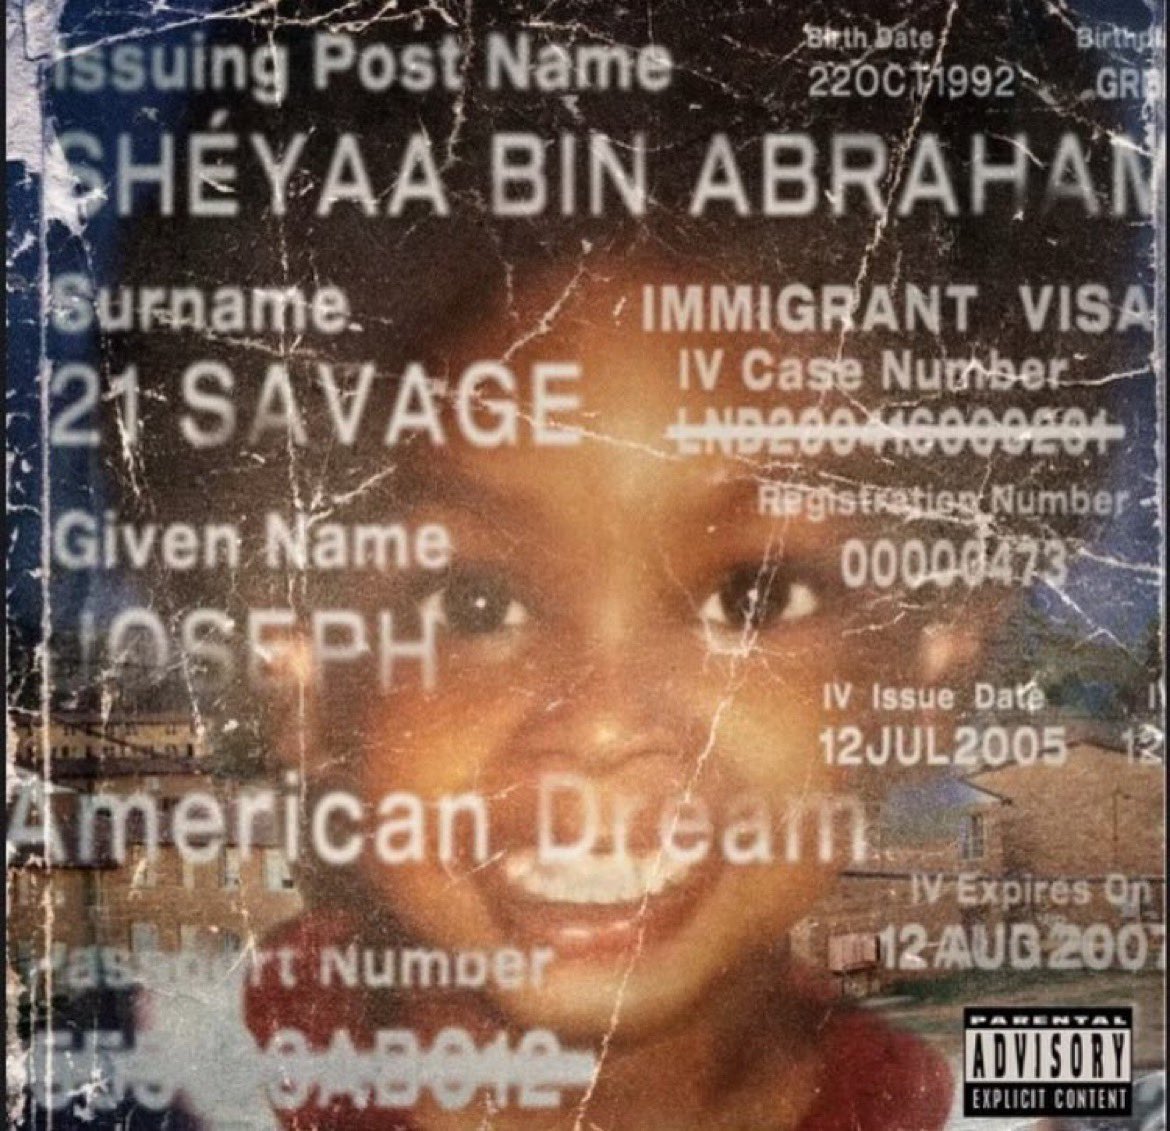 21 Savage annonce l'album "American Dream"